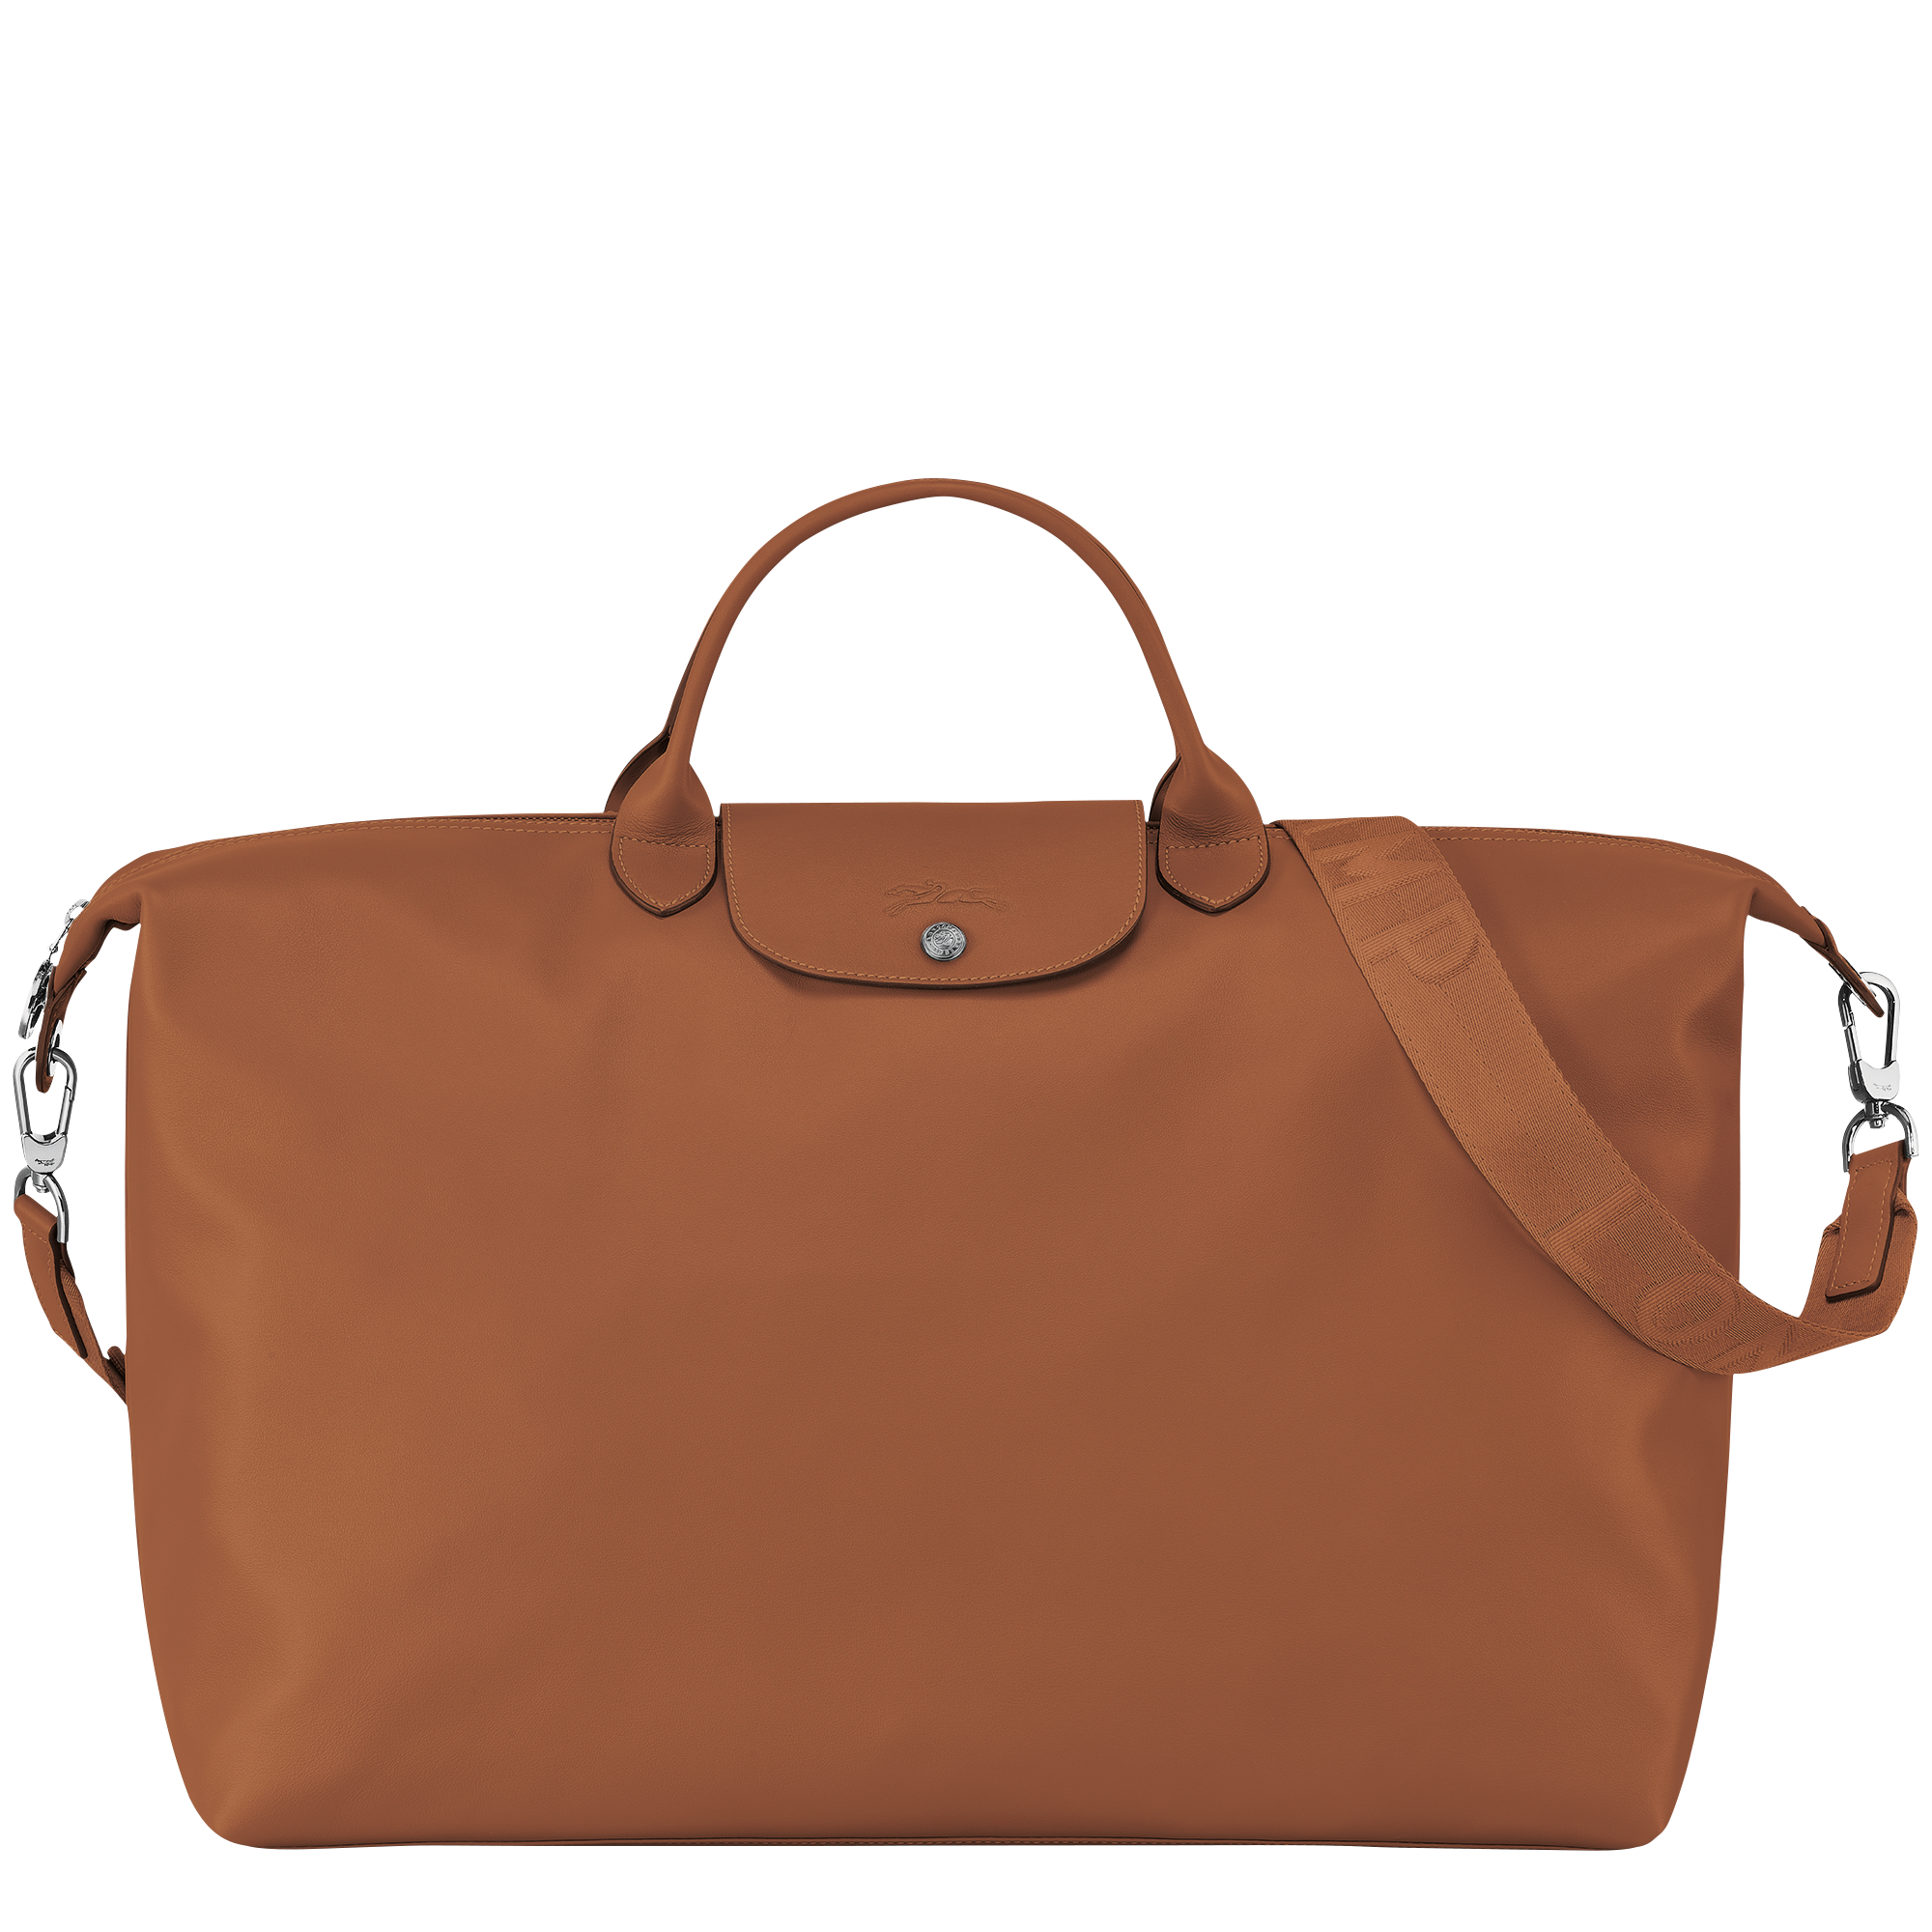 Le Pliage Xtra Travel bag S, Cognac